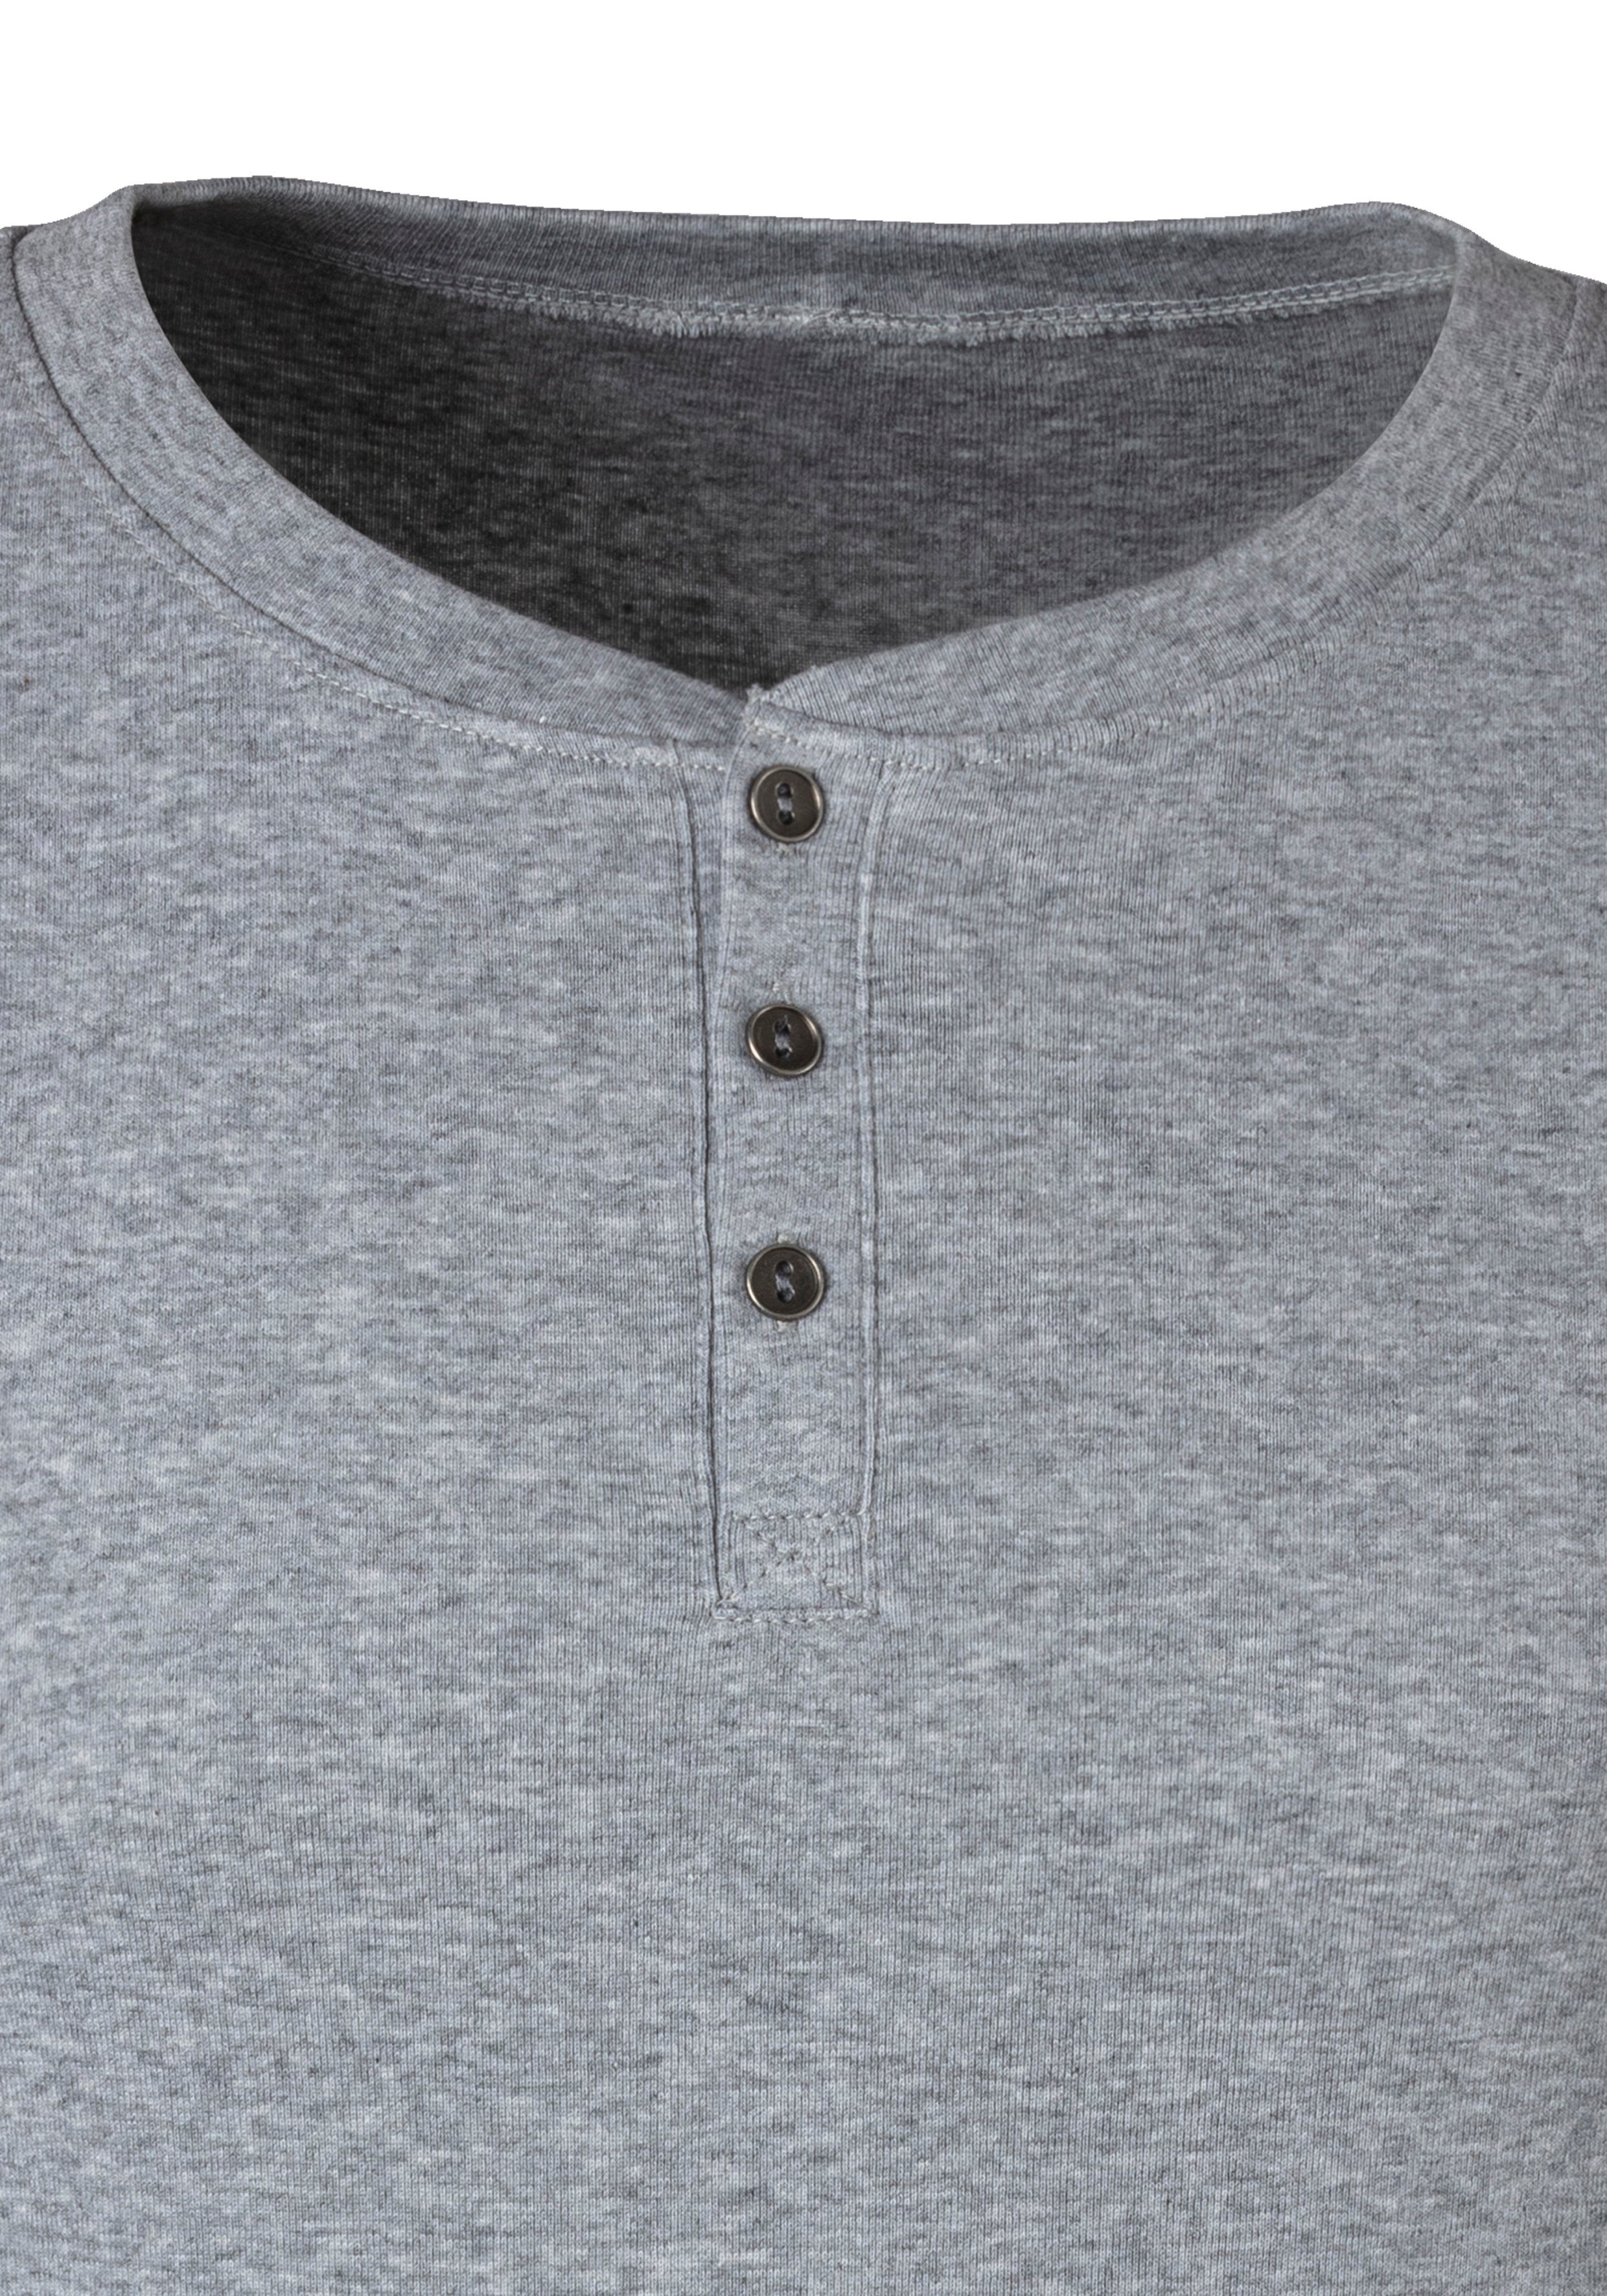 Knopfleiste H.I.S aufwendiger (Packung) T-Shirt grau-meliert Unterziehshirt mit als perfekt